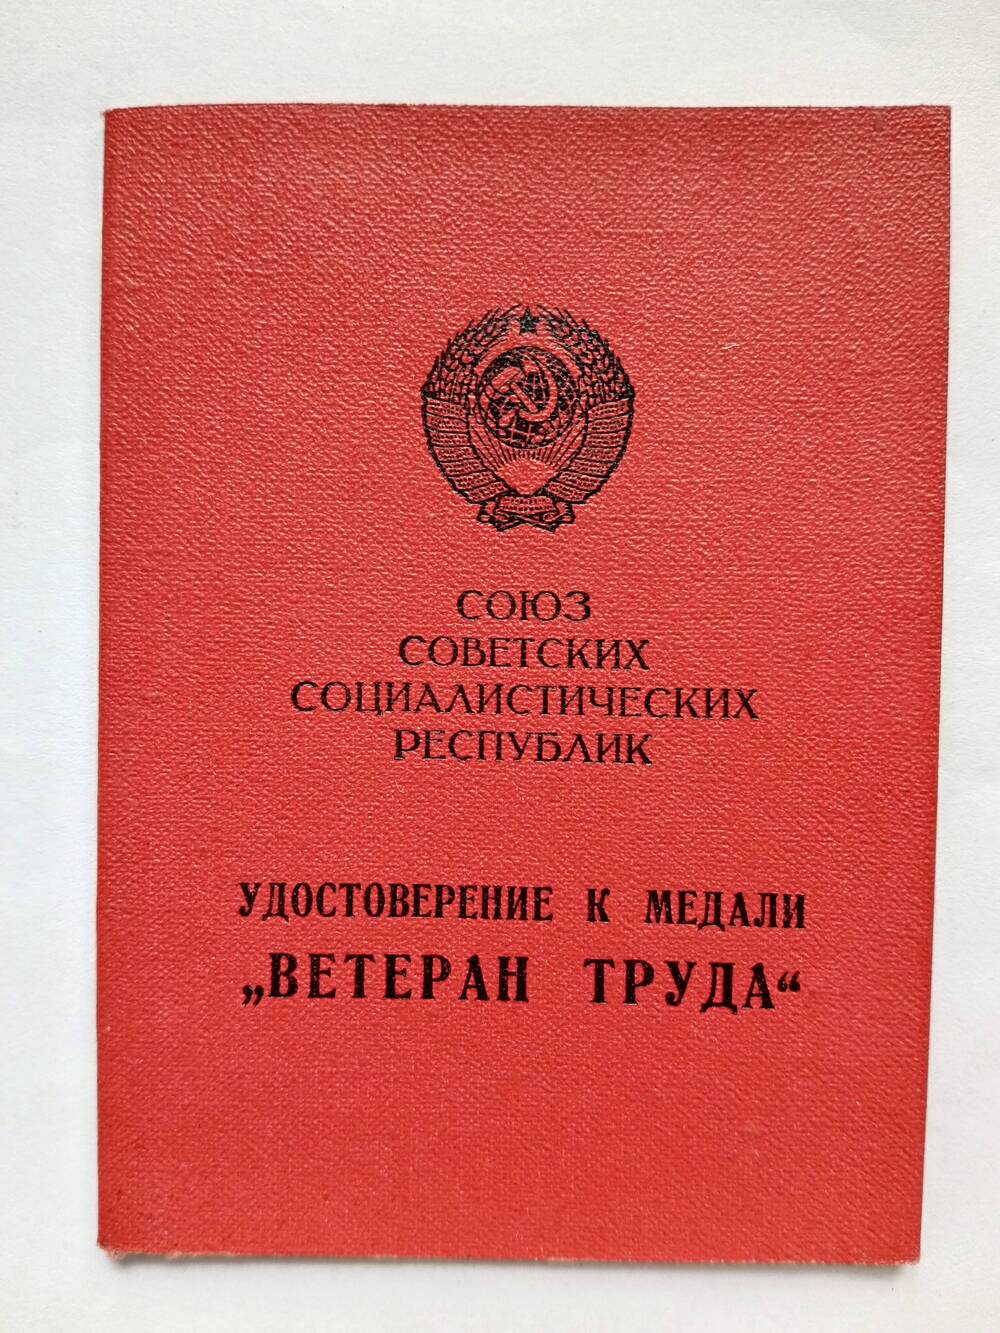 Удостоверение к медали Куликова В.А.